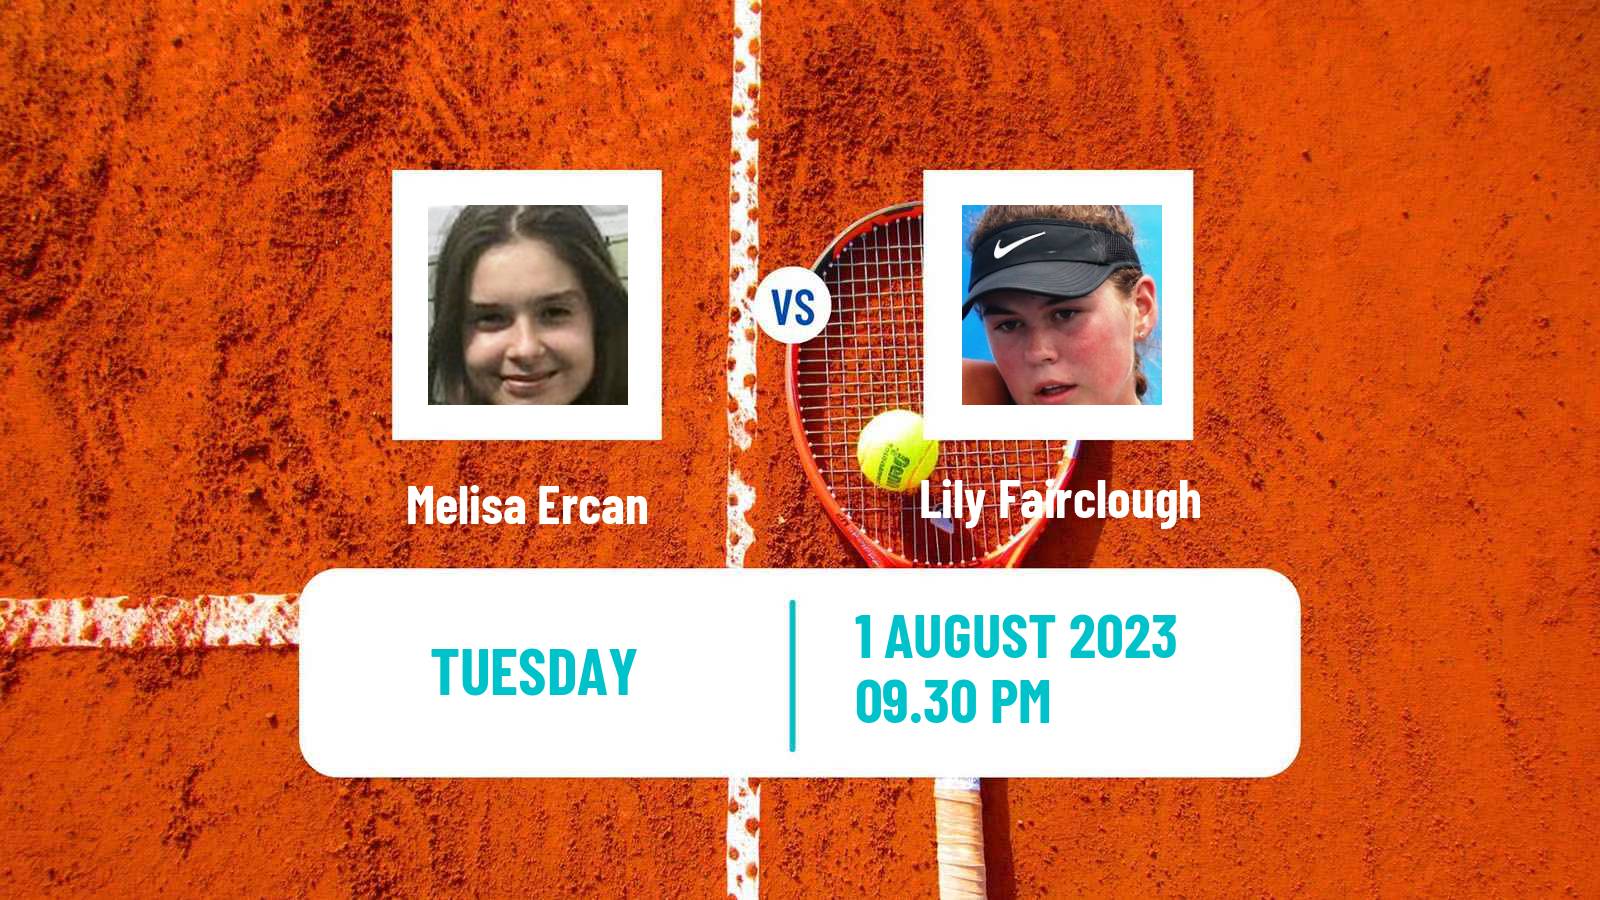 Tennis ITF W15 Caloundra 2 Women Melisa Ercan - Lily Fairclough